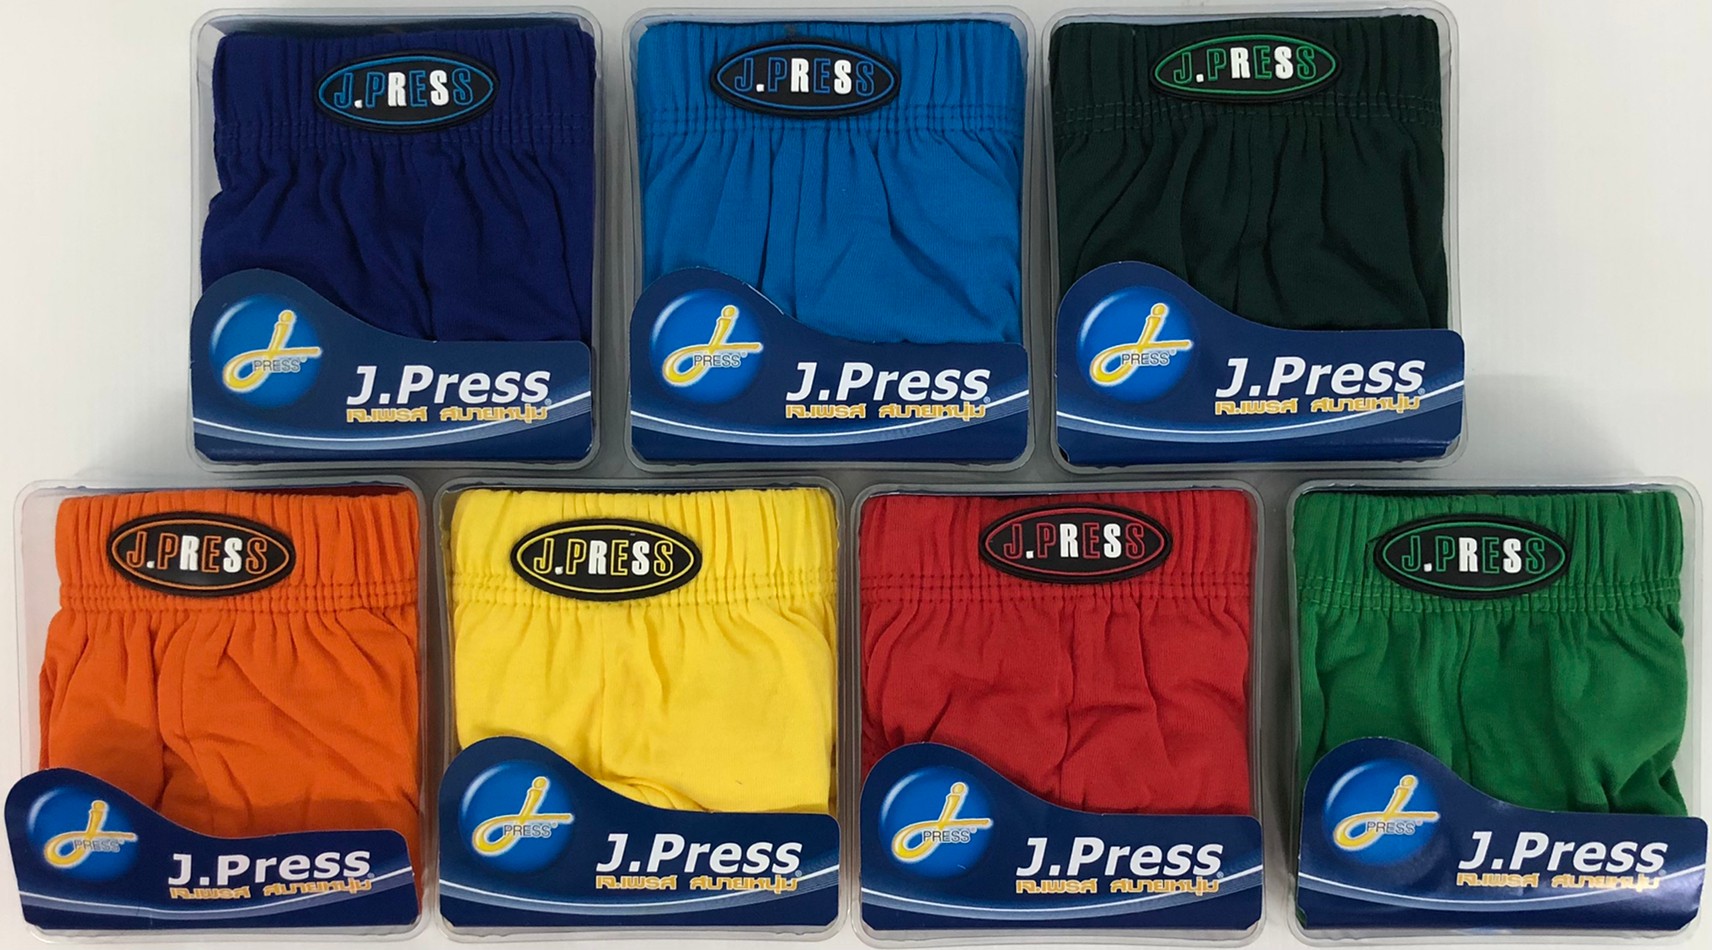 กางเกงในชาย J.Press ขอบผ้า (6 ตัว) รุ่นยอดนิยม 12 สีให้เลือก J Press เจเพรส รุ่น 1444 กางเกงใน ชาย